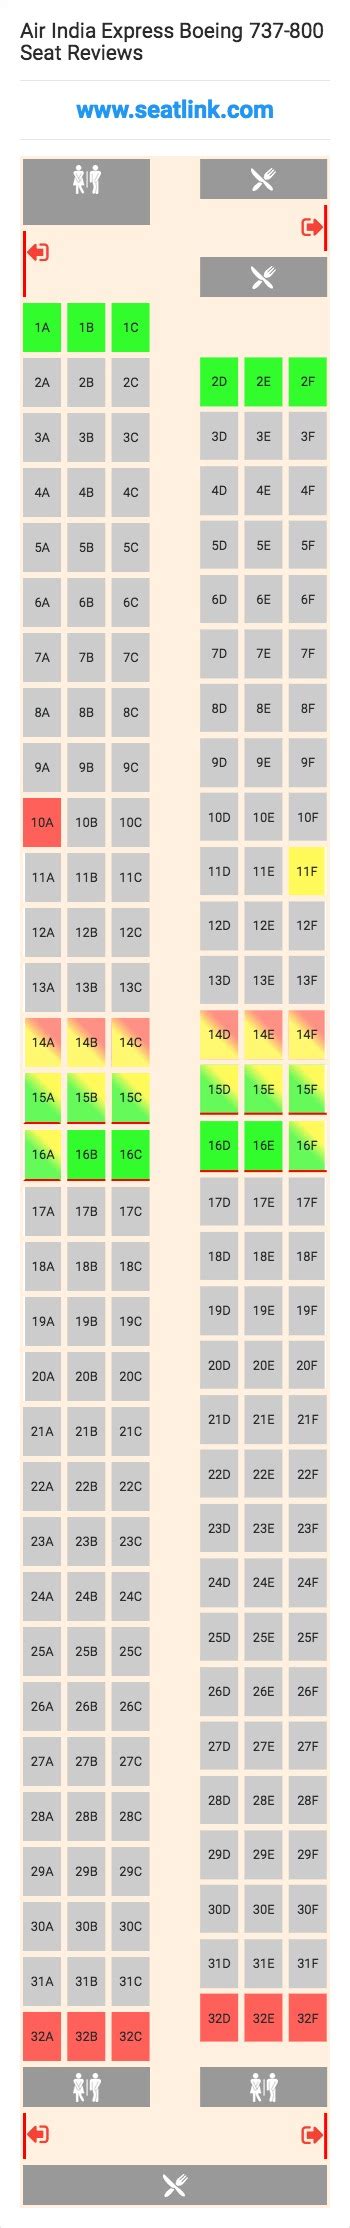 Air India Flight Seating Arrangement